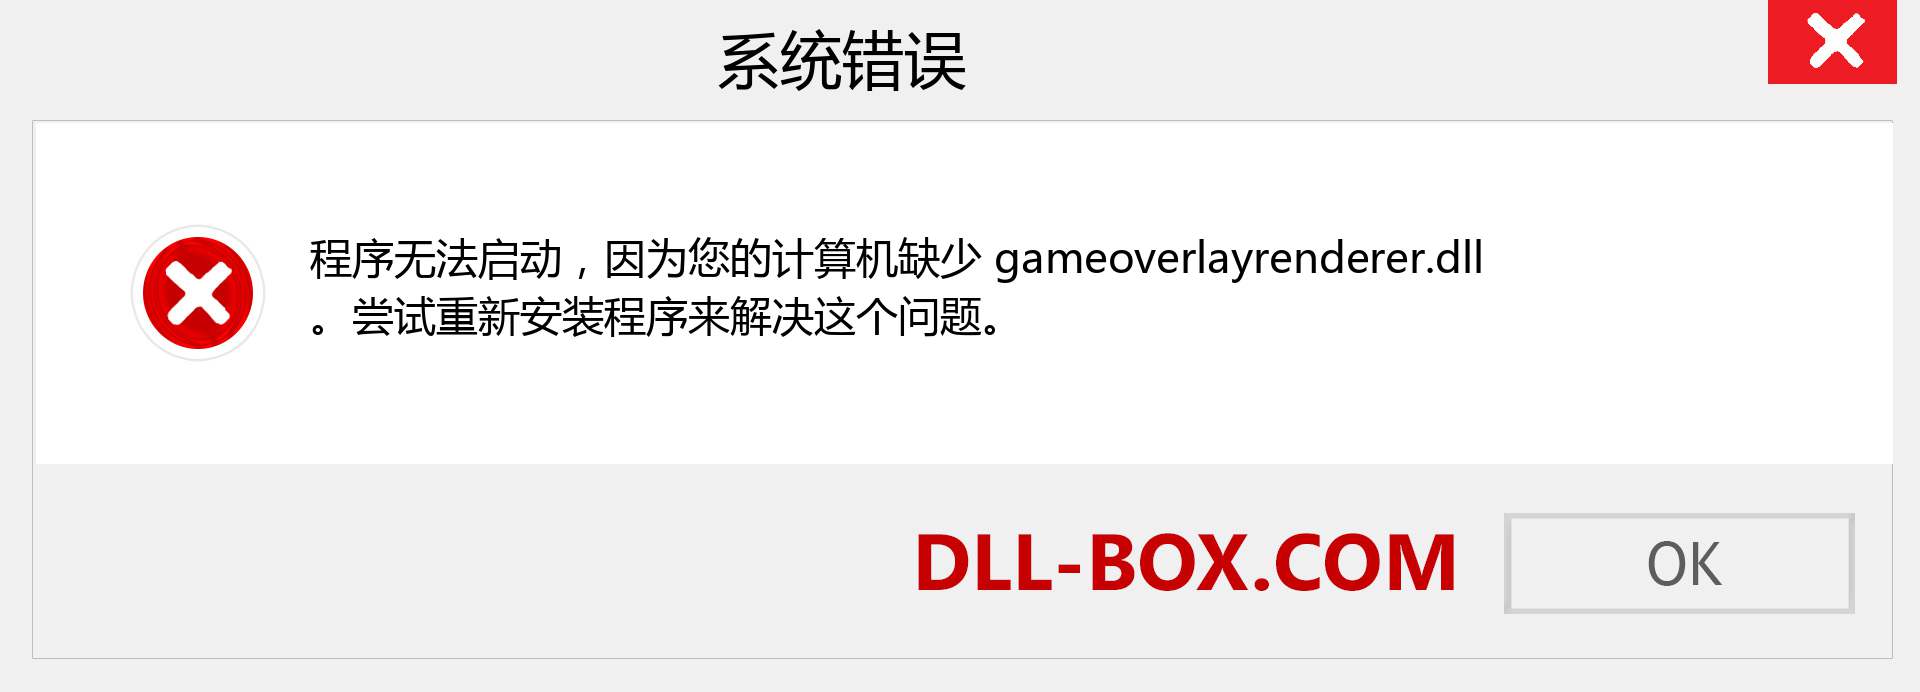 gameoverlayrenderer.dll 文件丢失？。 适用于 Windows 7、8、10 的下载 - 修复 Windows、照片、图像上的 gameoverlayrenderer dll 丢失错误